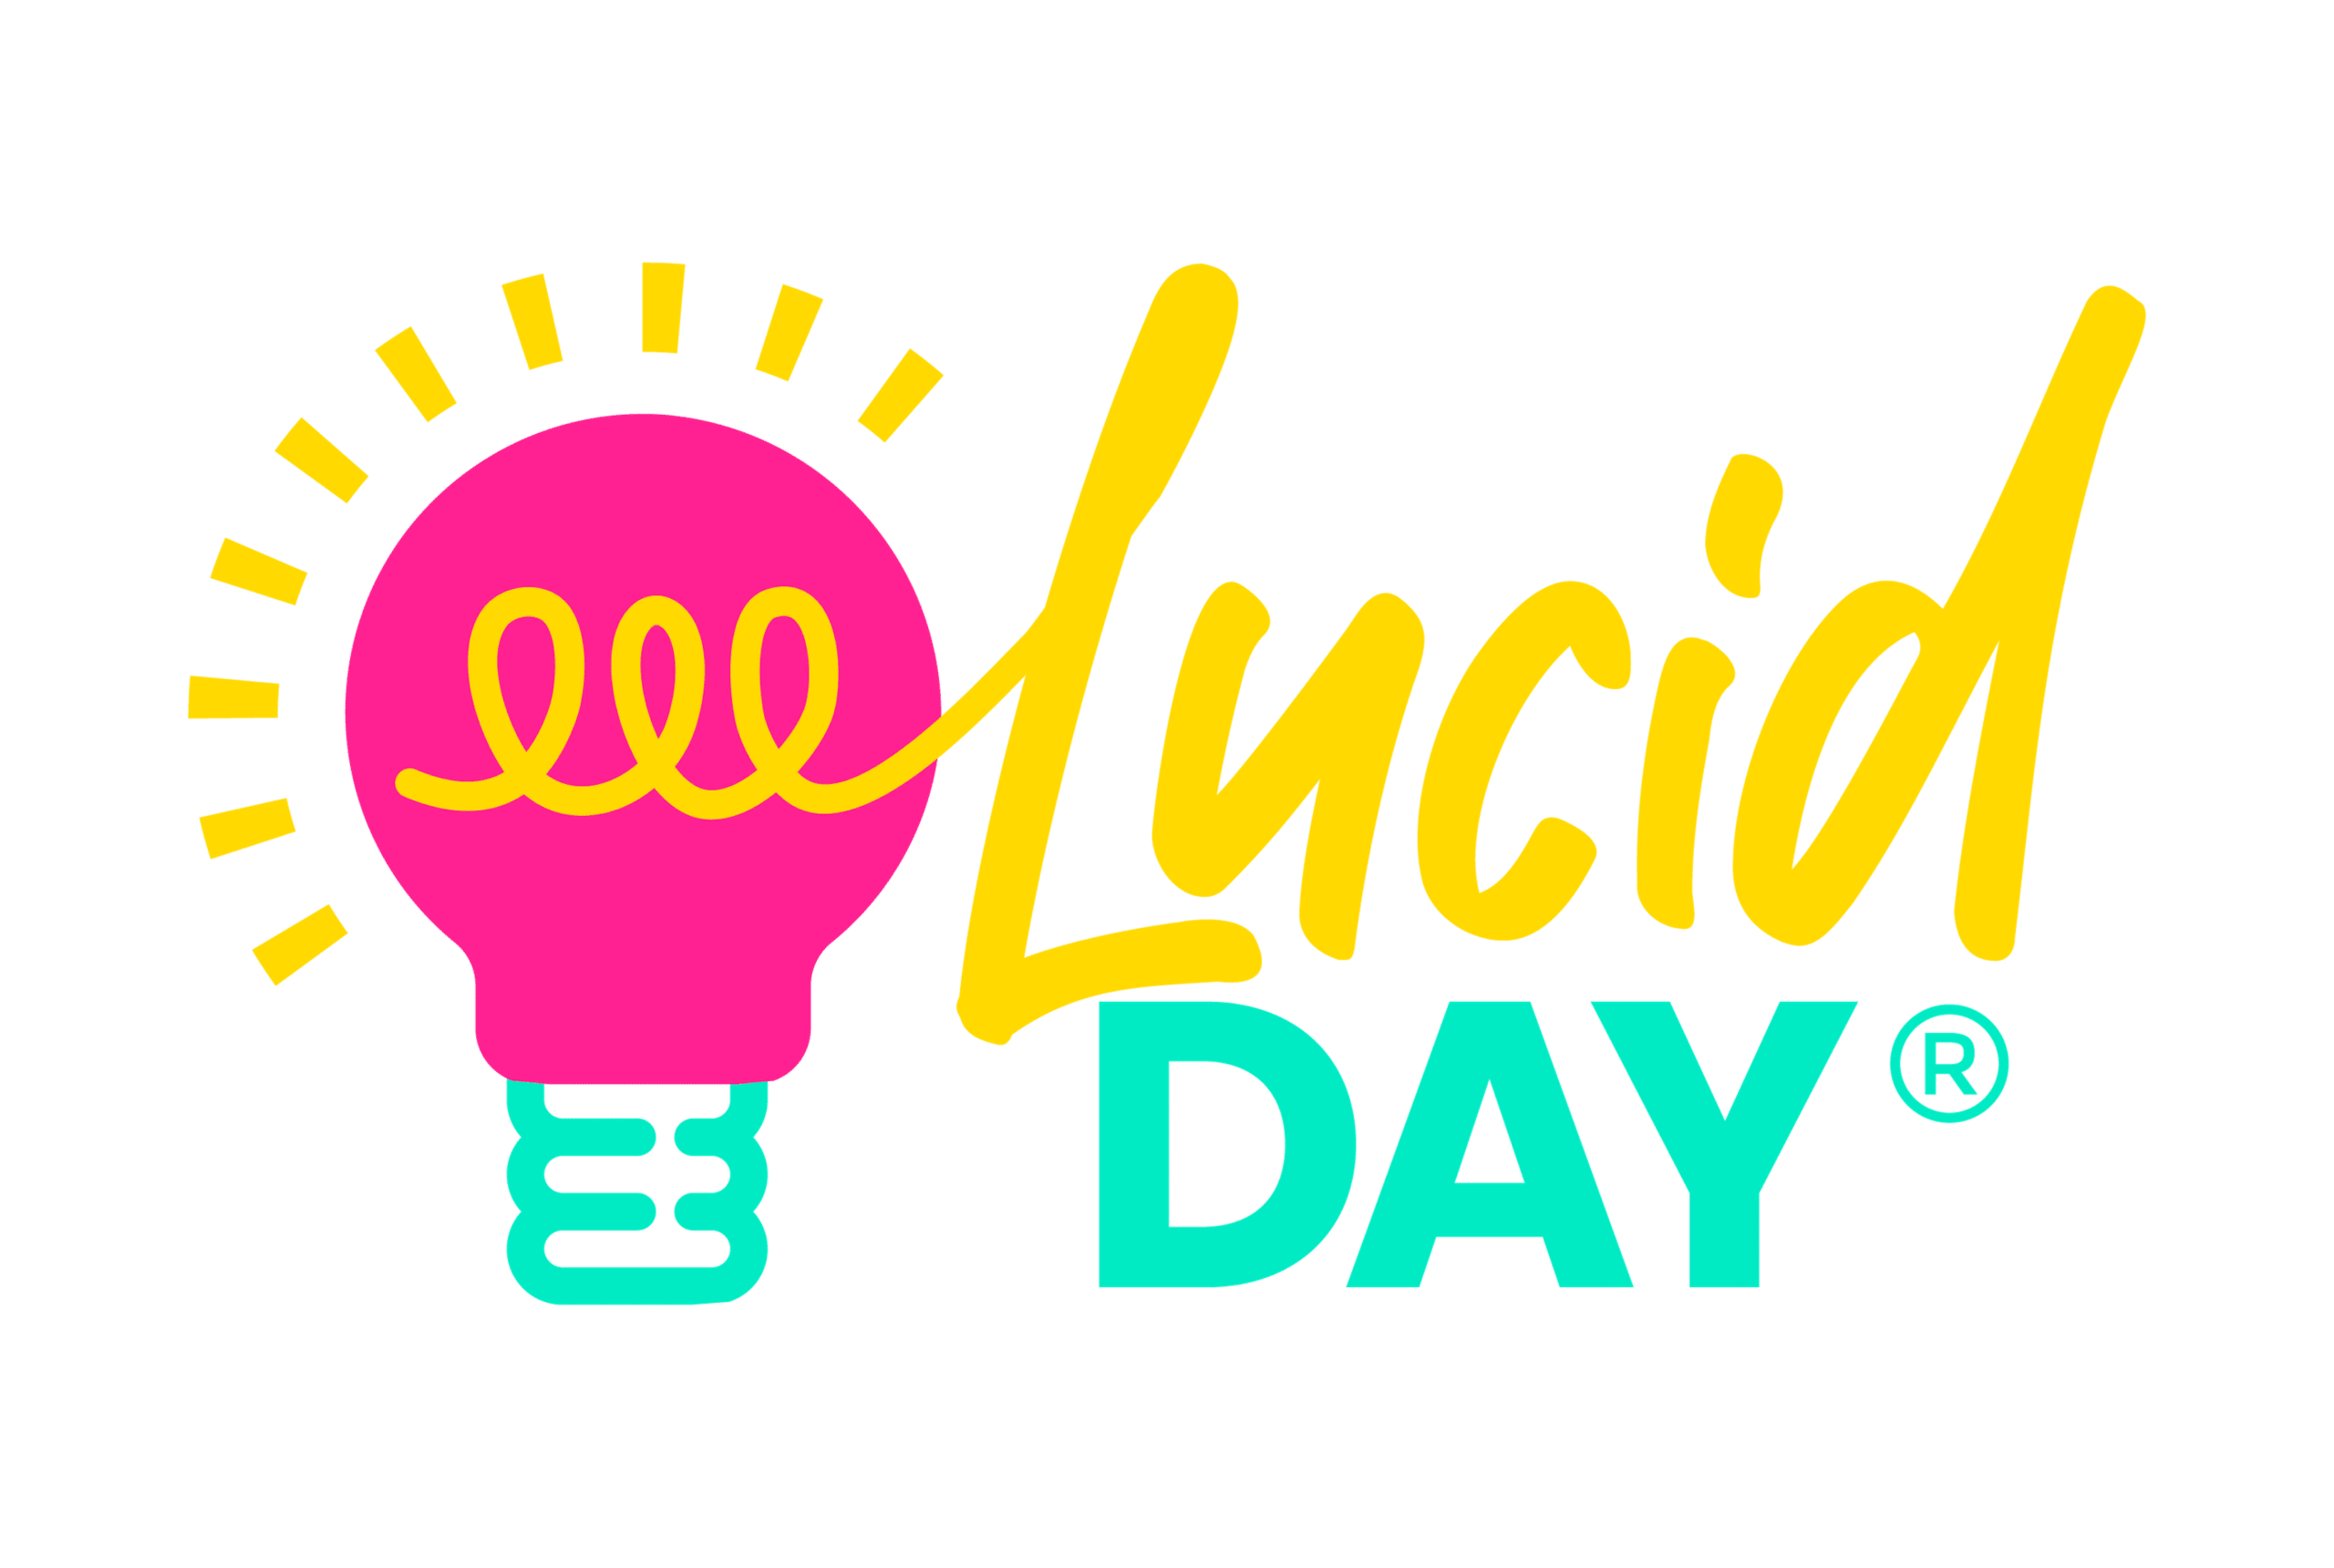 Lucid Day Logo (R)